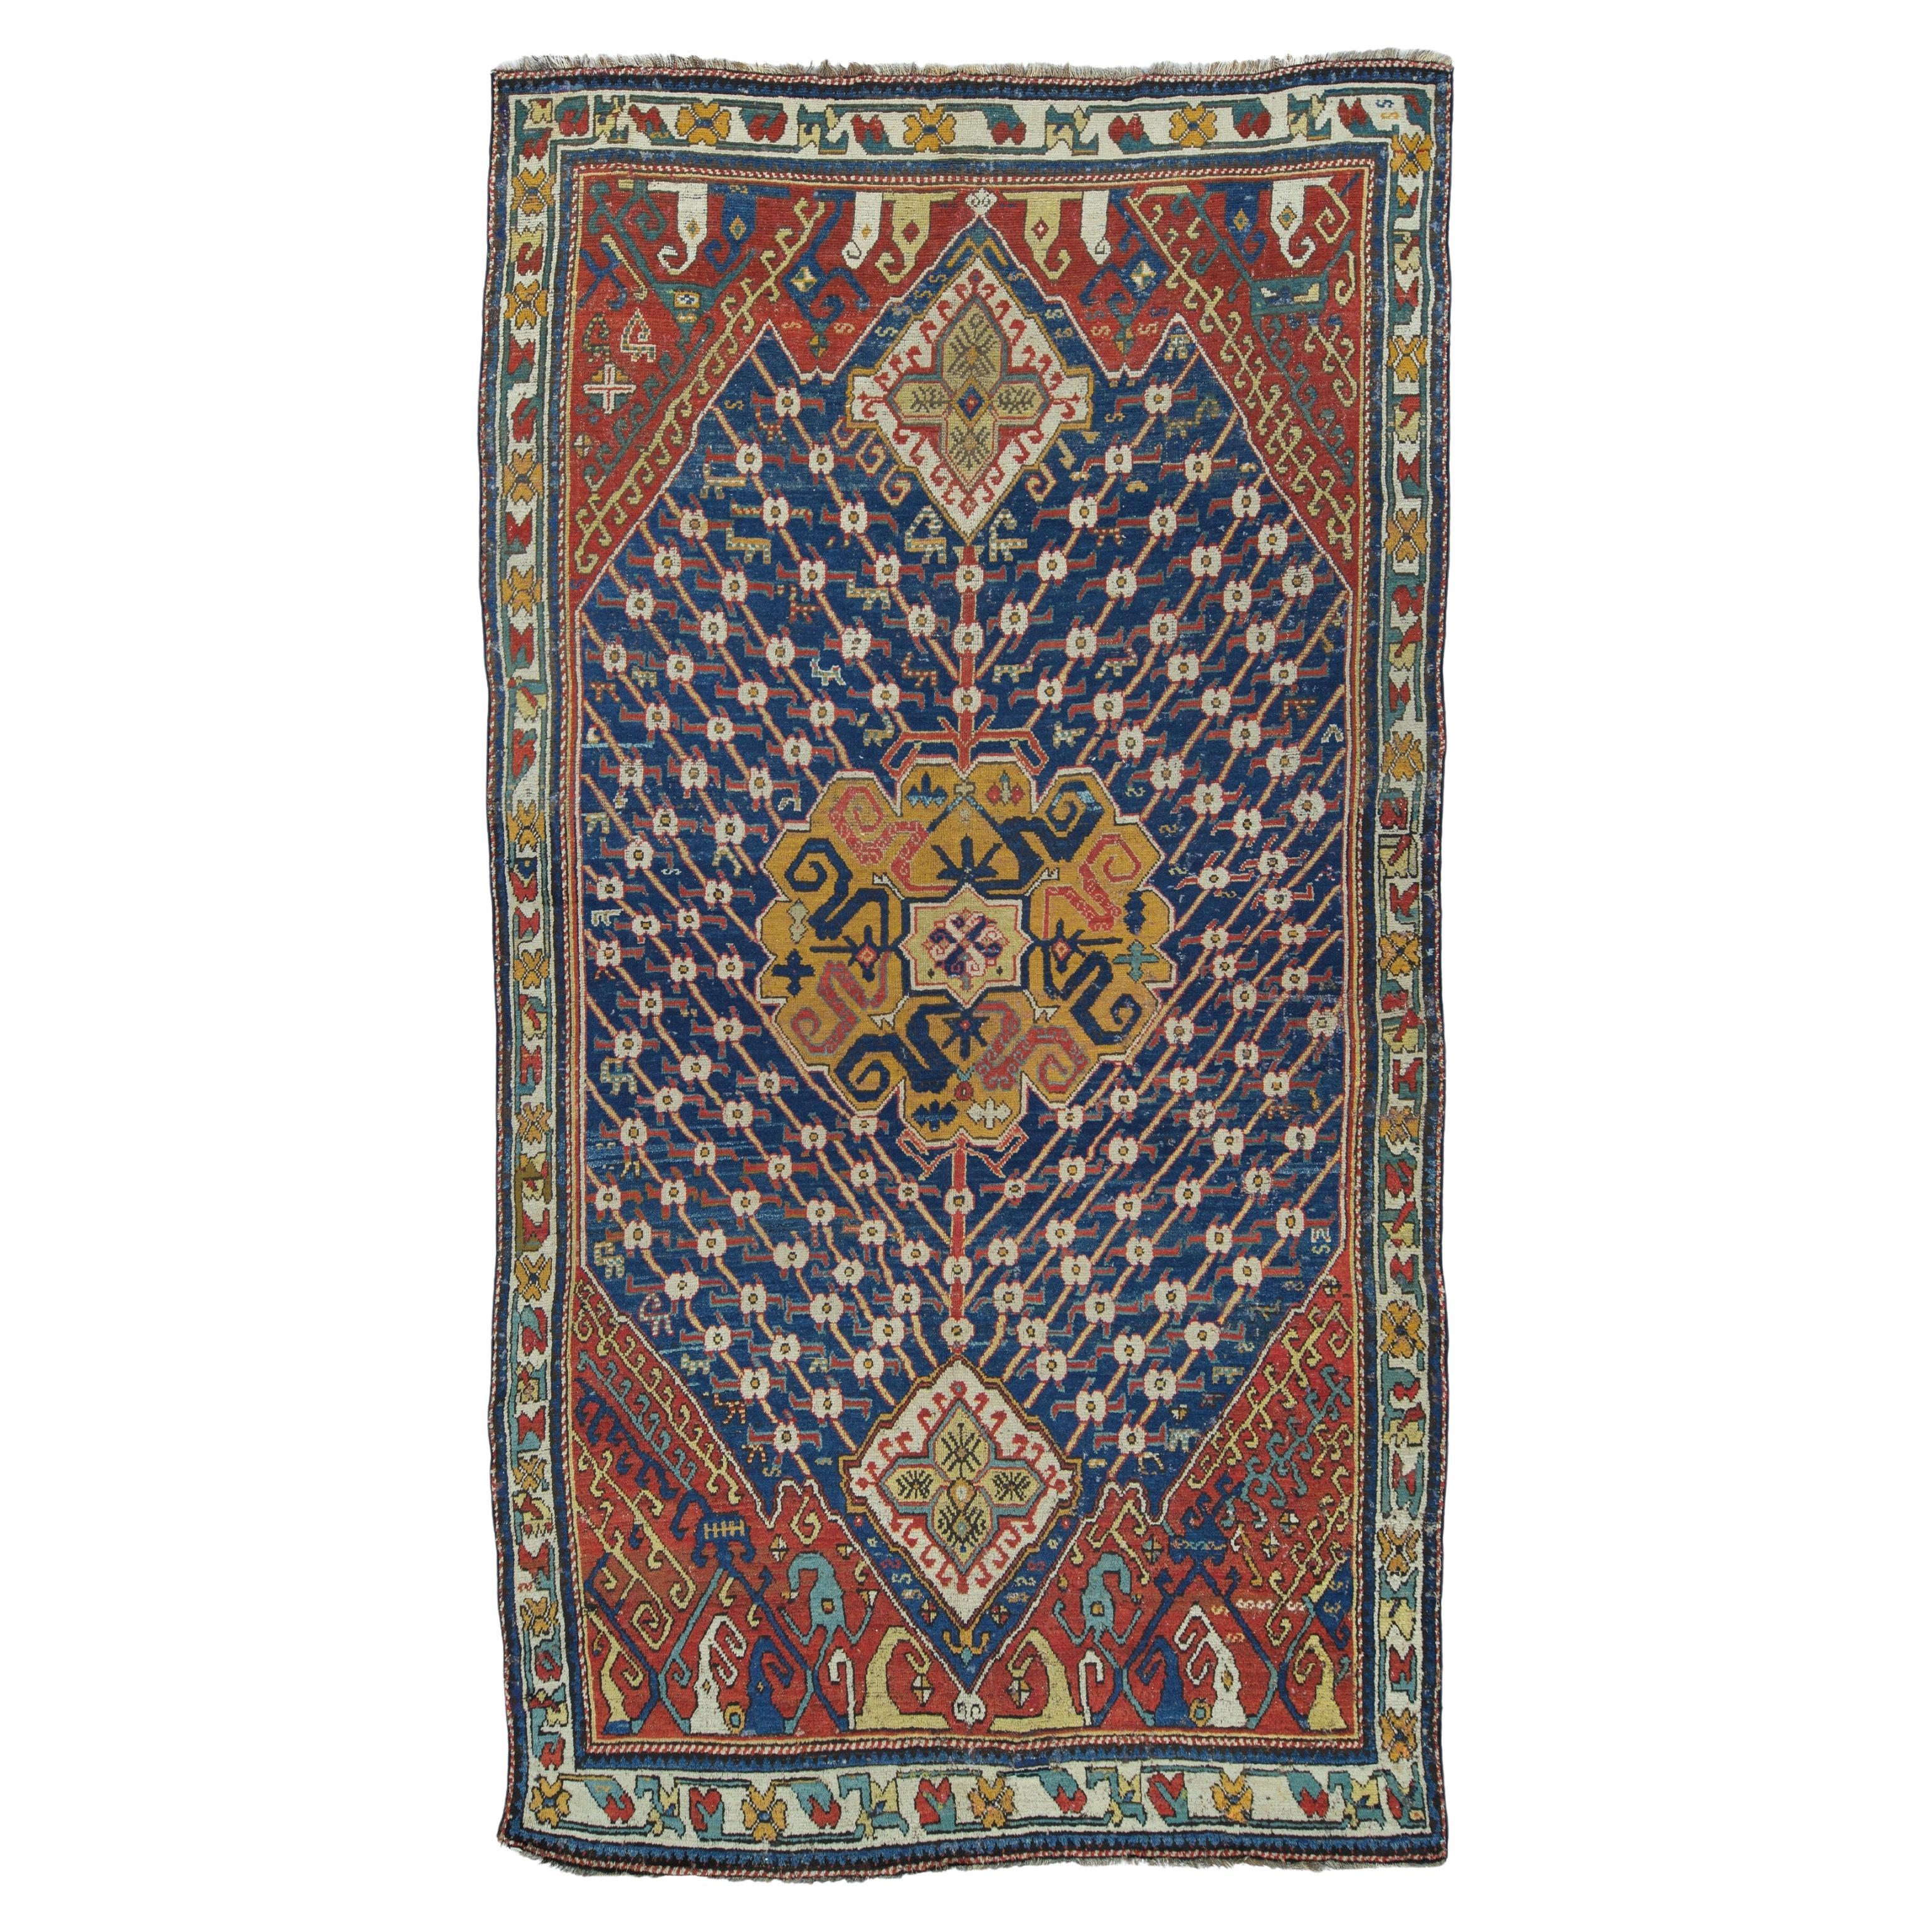 Early 19th Century Kazak Rug - Antique Caucasian Rug, Antique Rug